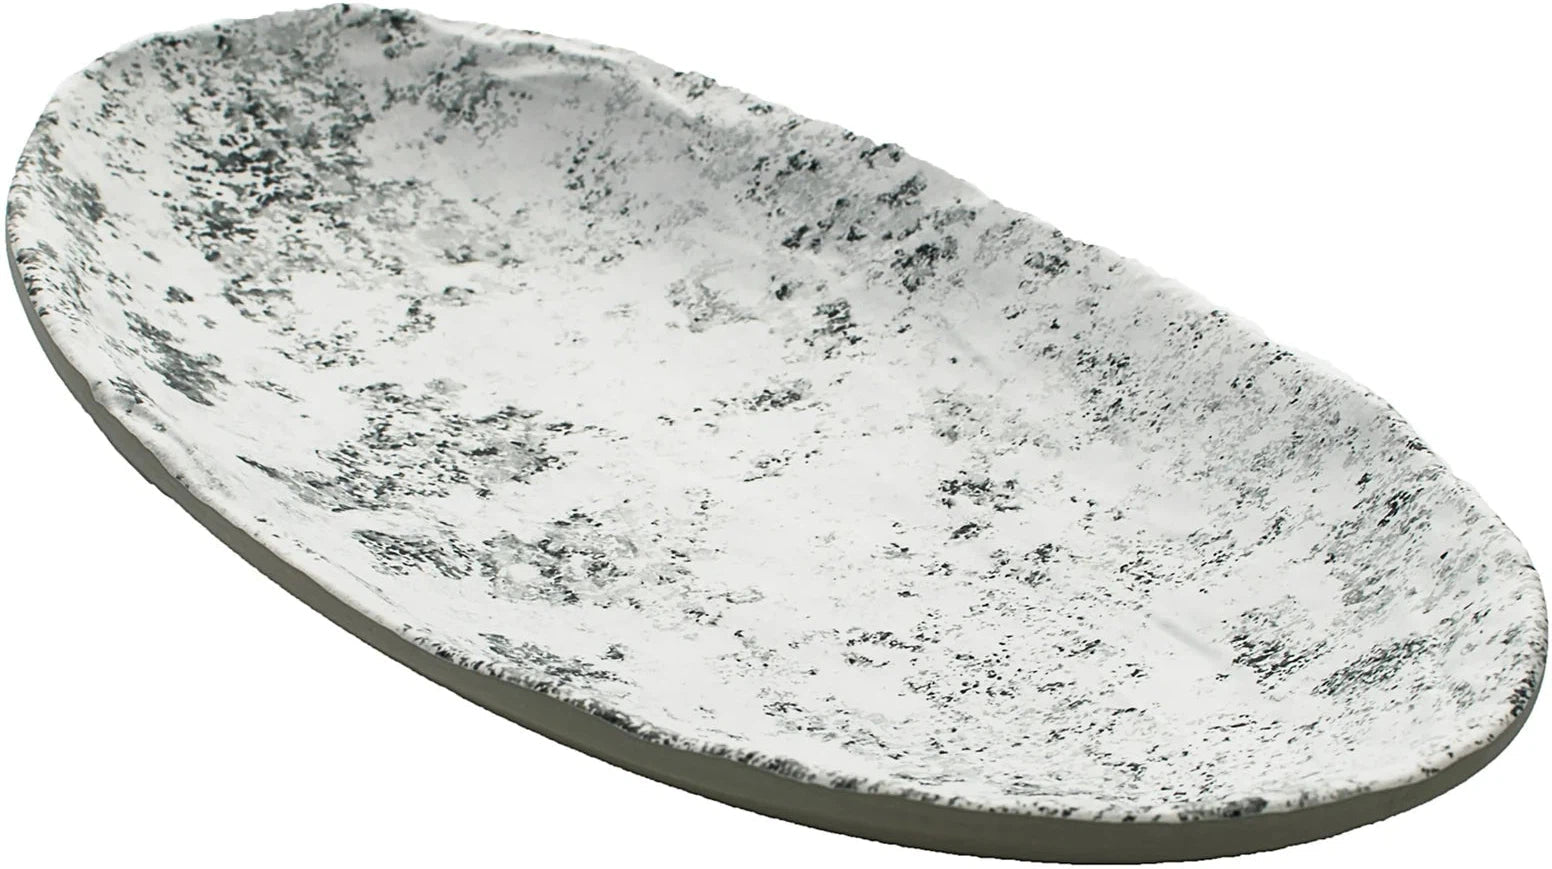 Cheforward - Endure 12.4" Pebble Large Oval Melamine Plate - 15005085006